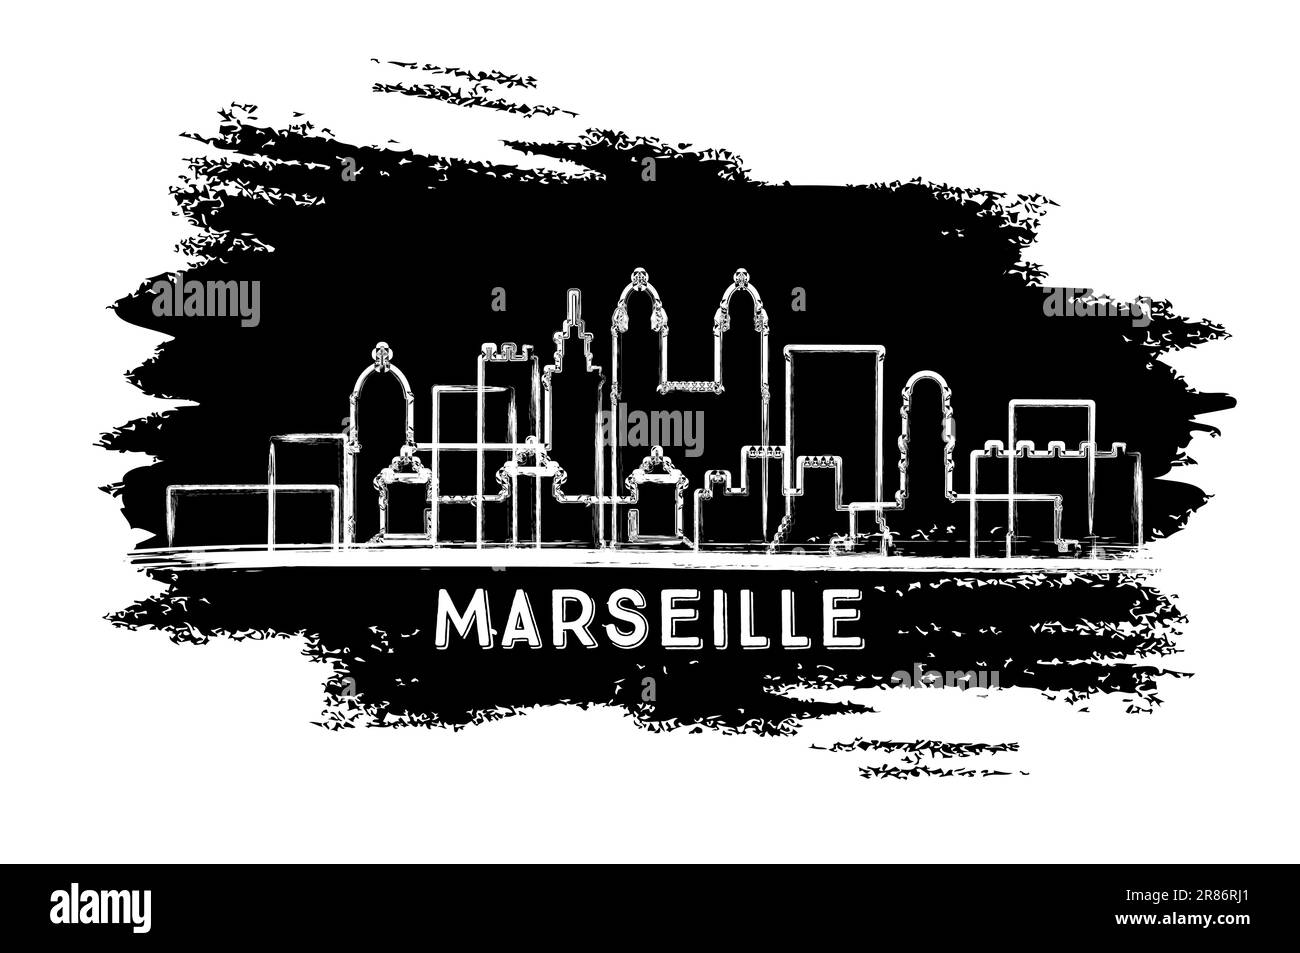 Silhouette Der Skyline Von Marseille France. Handgezeichnete Skizze. Business Travel and Tourism Concept mit moderner Architektur. Vektordarstellung. Stock Vektor